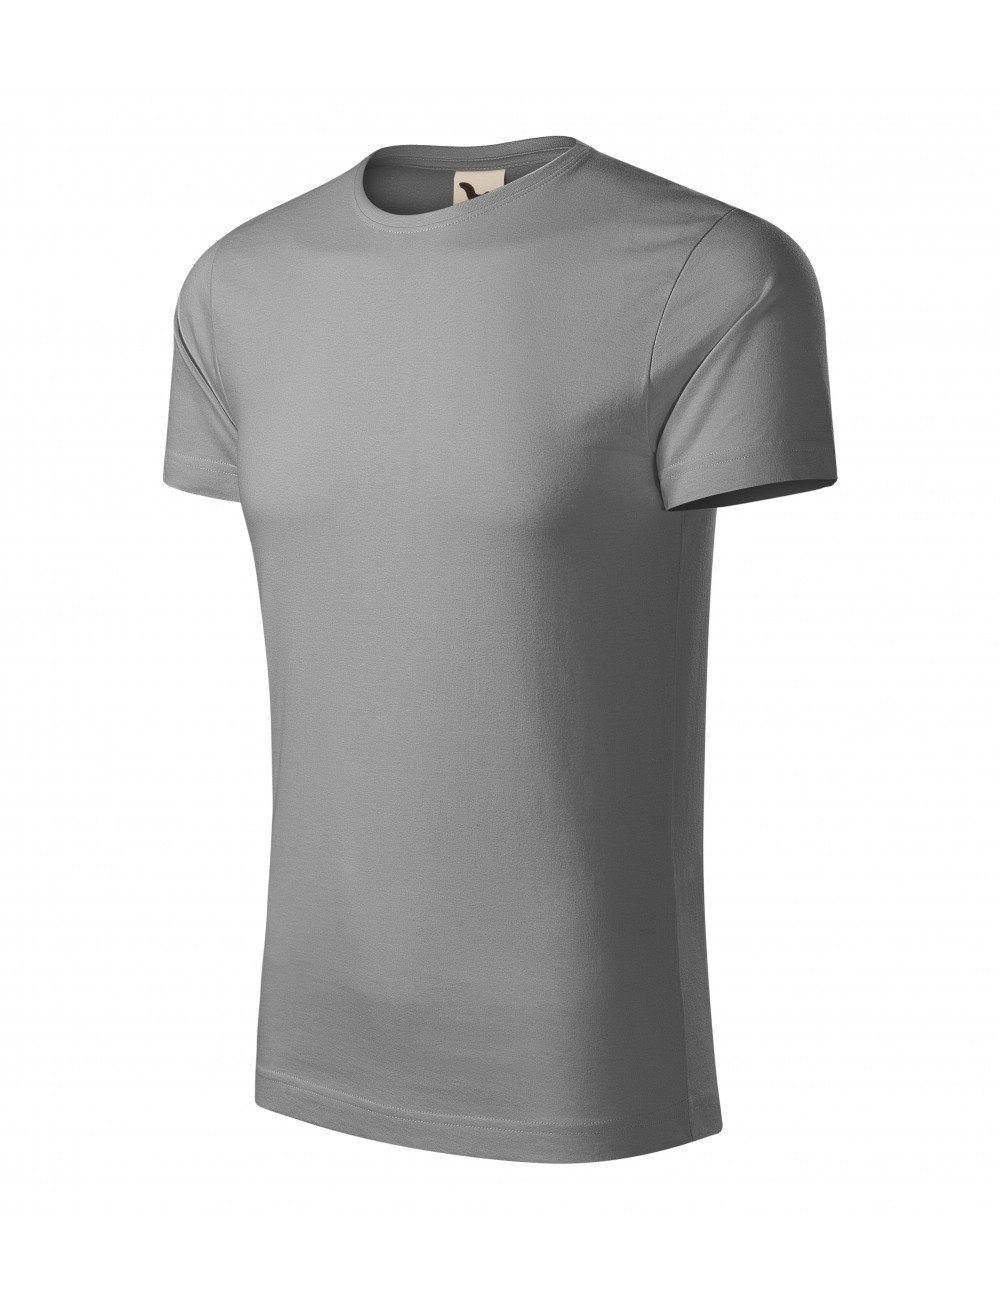 Herren-T-Shirt Origin 171 grau-schwarz meliert Adler Malfini